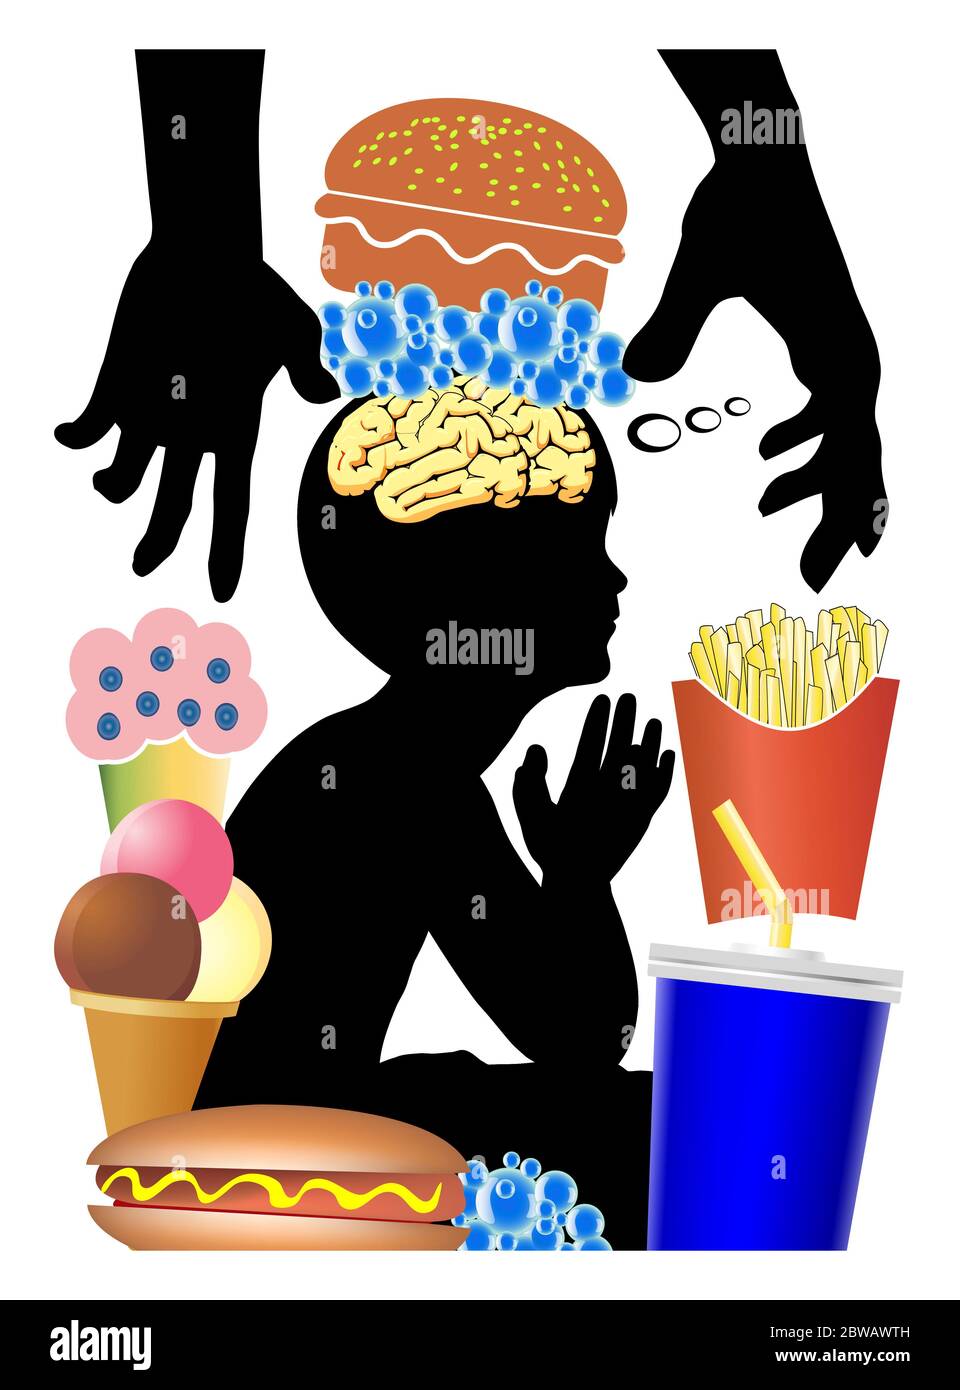 Essgewohnheiten der Kinder manipuliert werden, um nach Junk-Food wie Burger, Süßigkeiten und alkoholfreie Getränke sehnen. Stockfoto